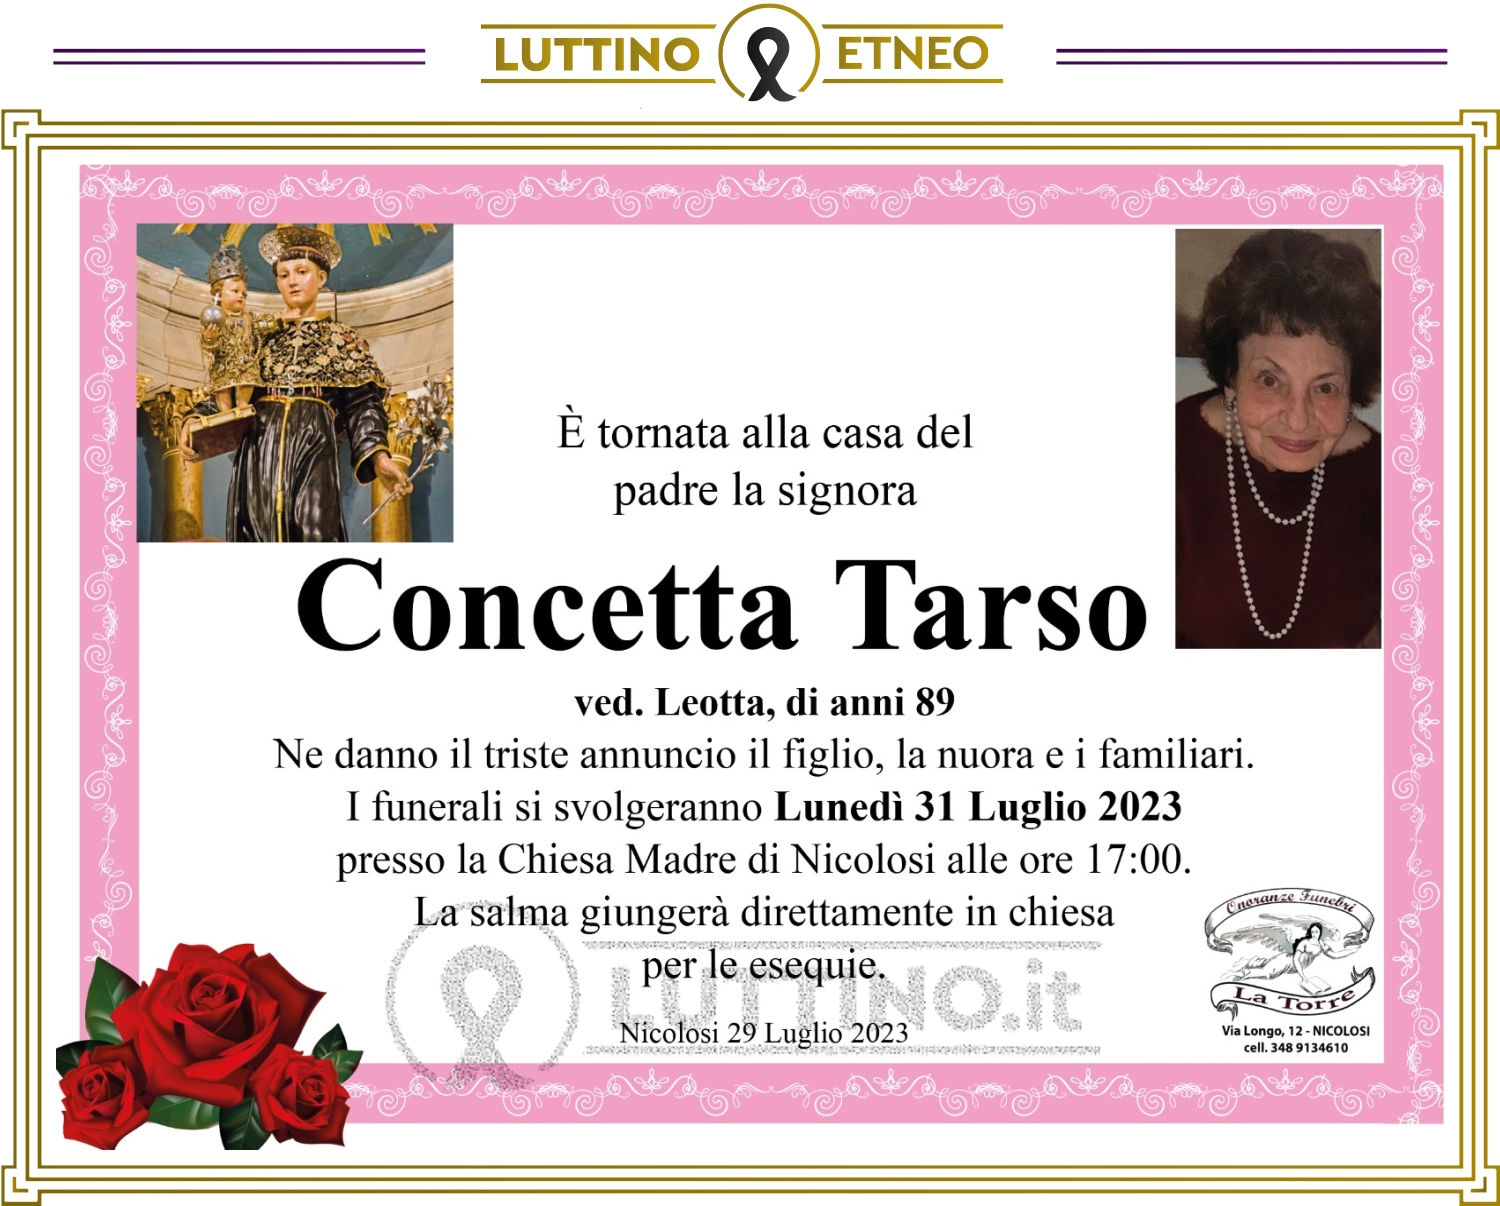 Concetta Tarso